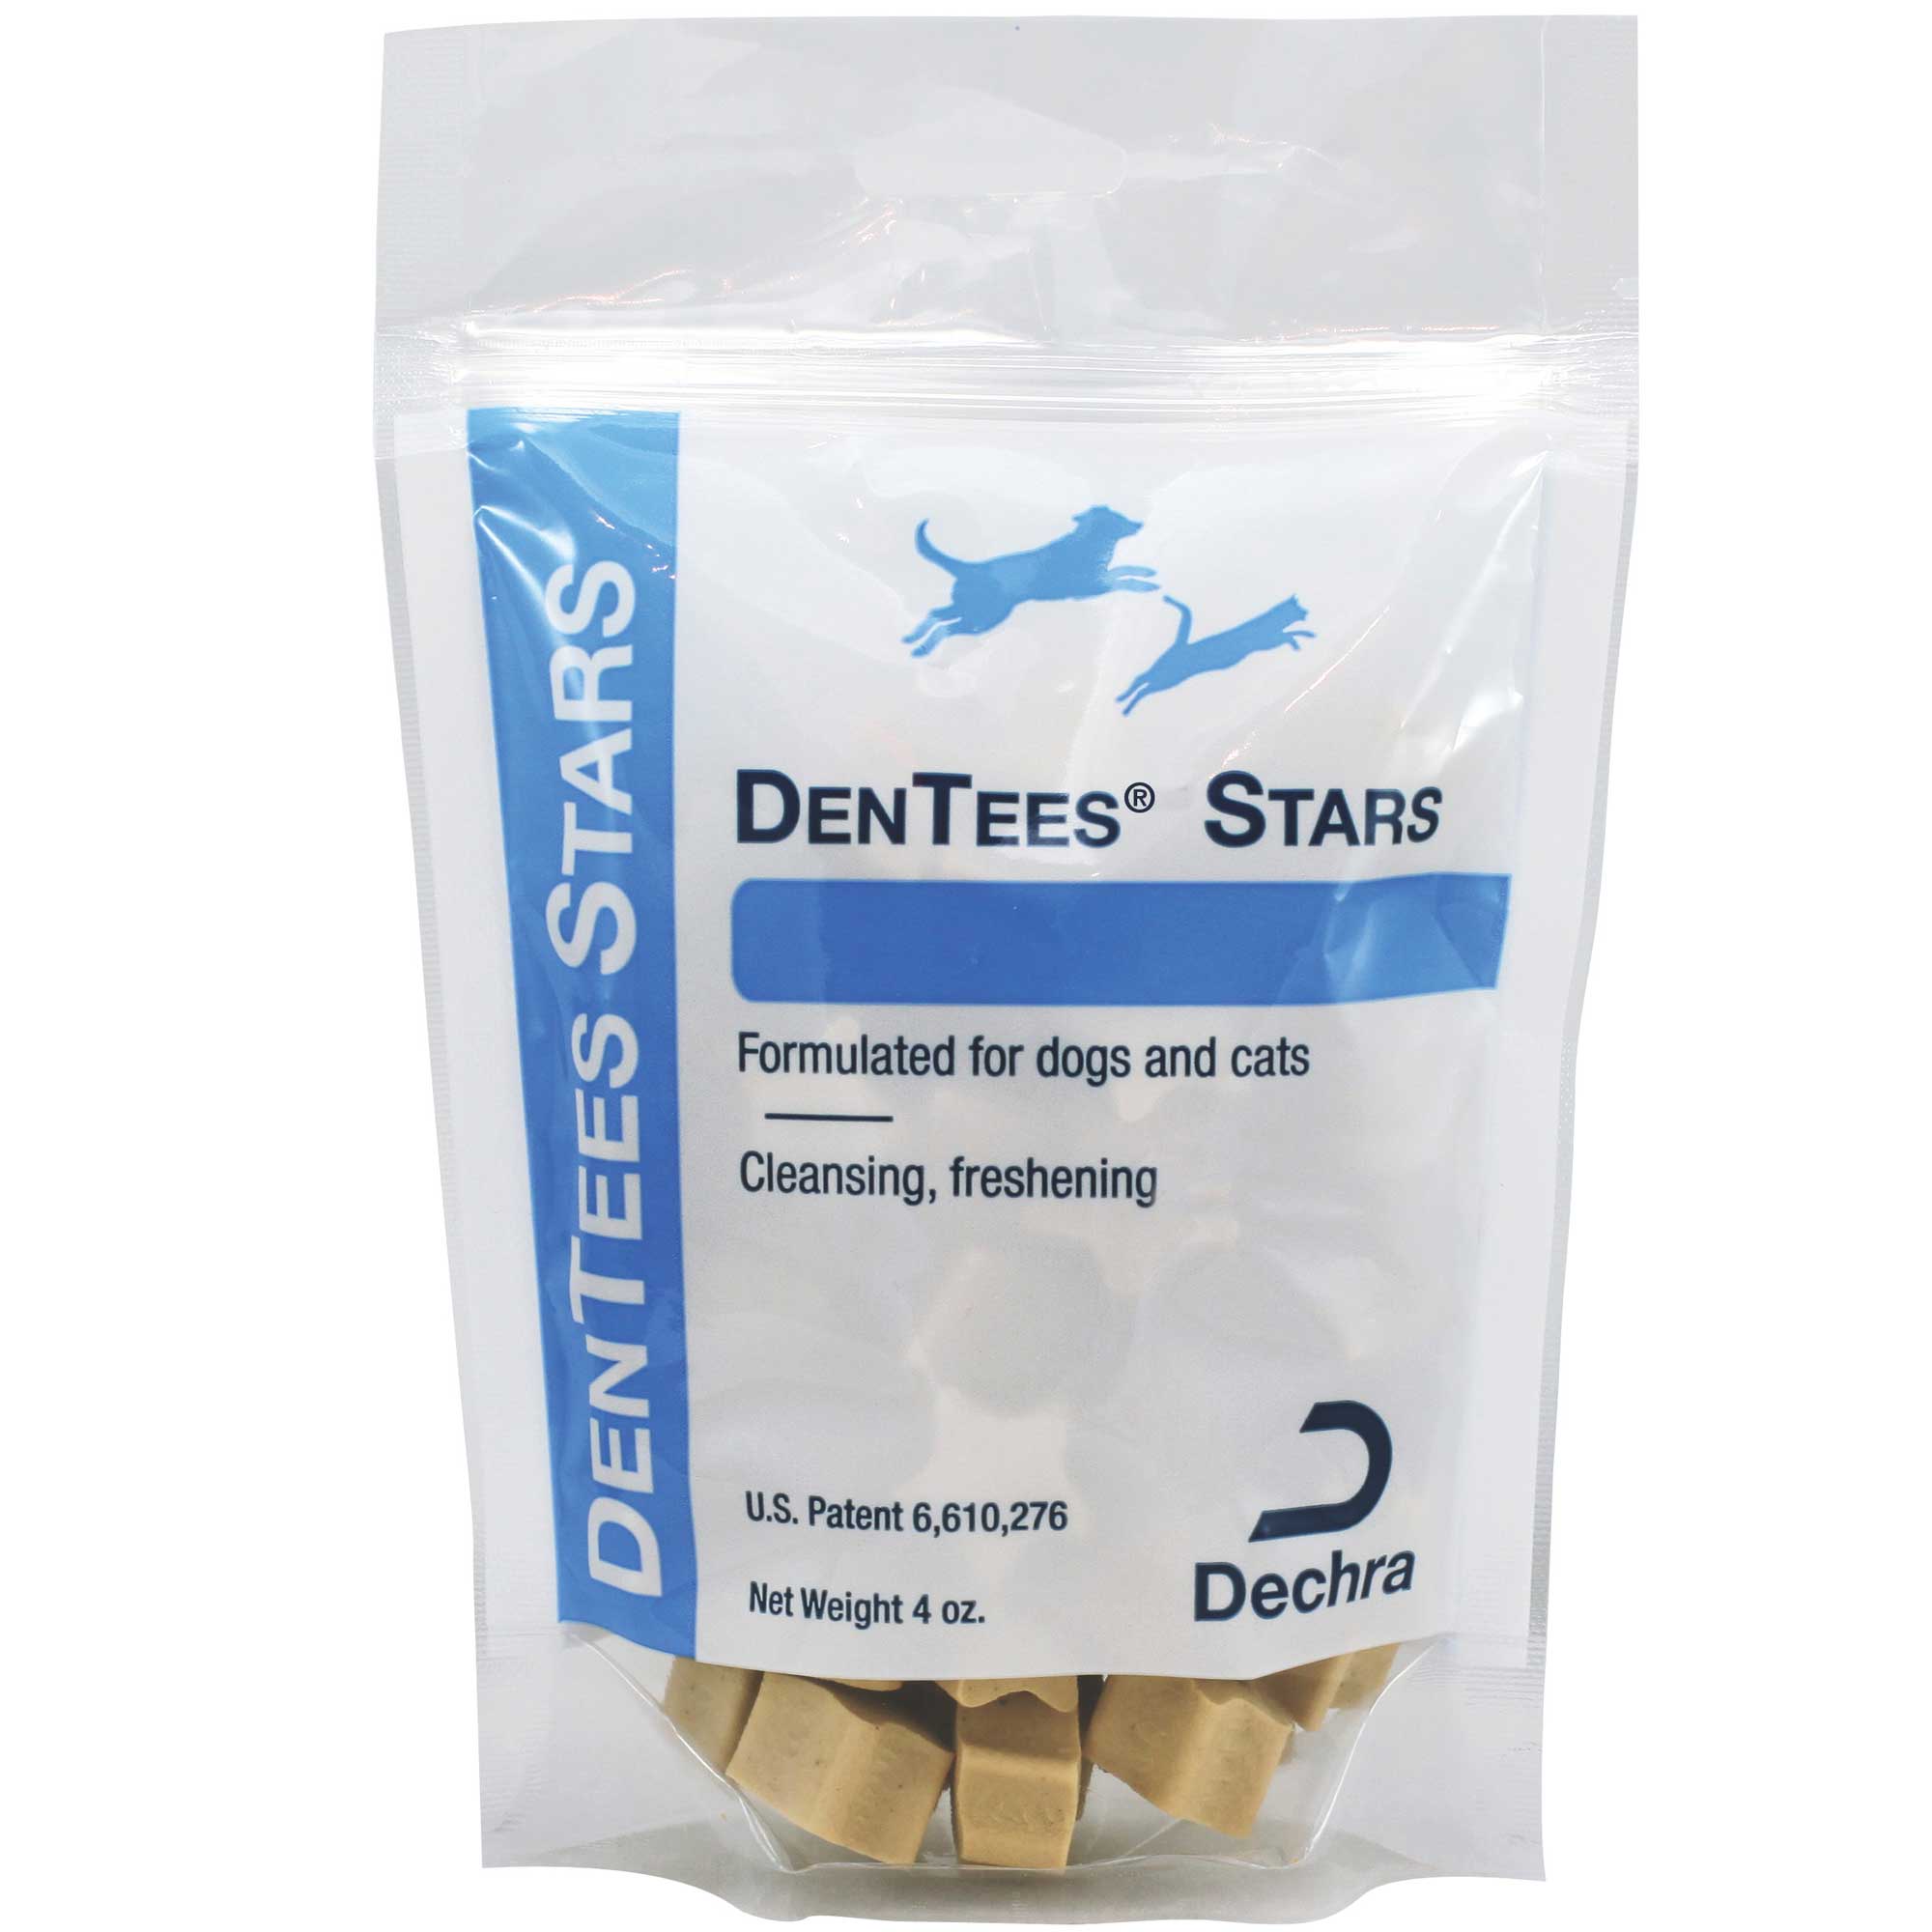 DenTees Stars Usage